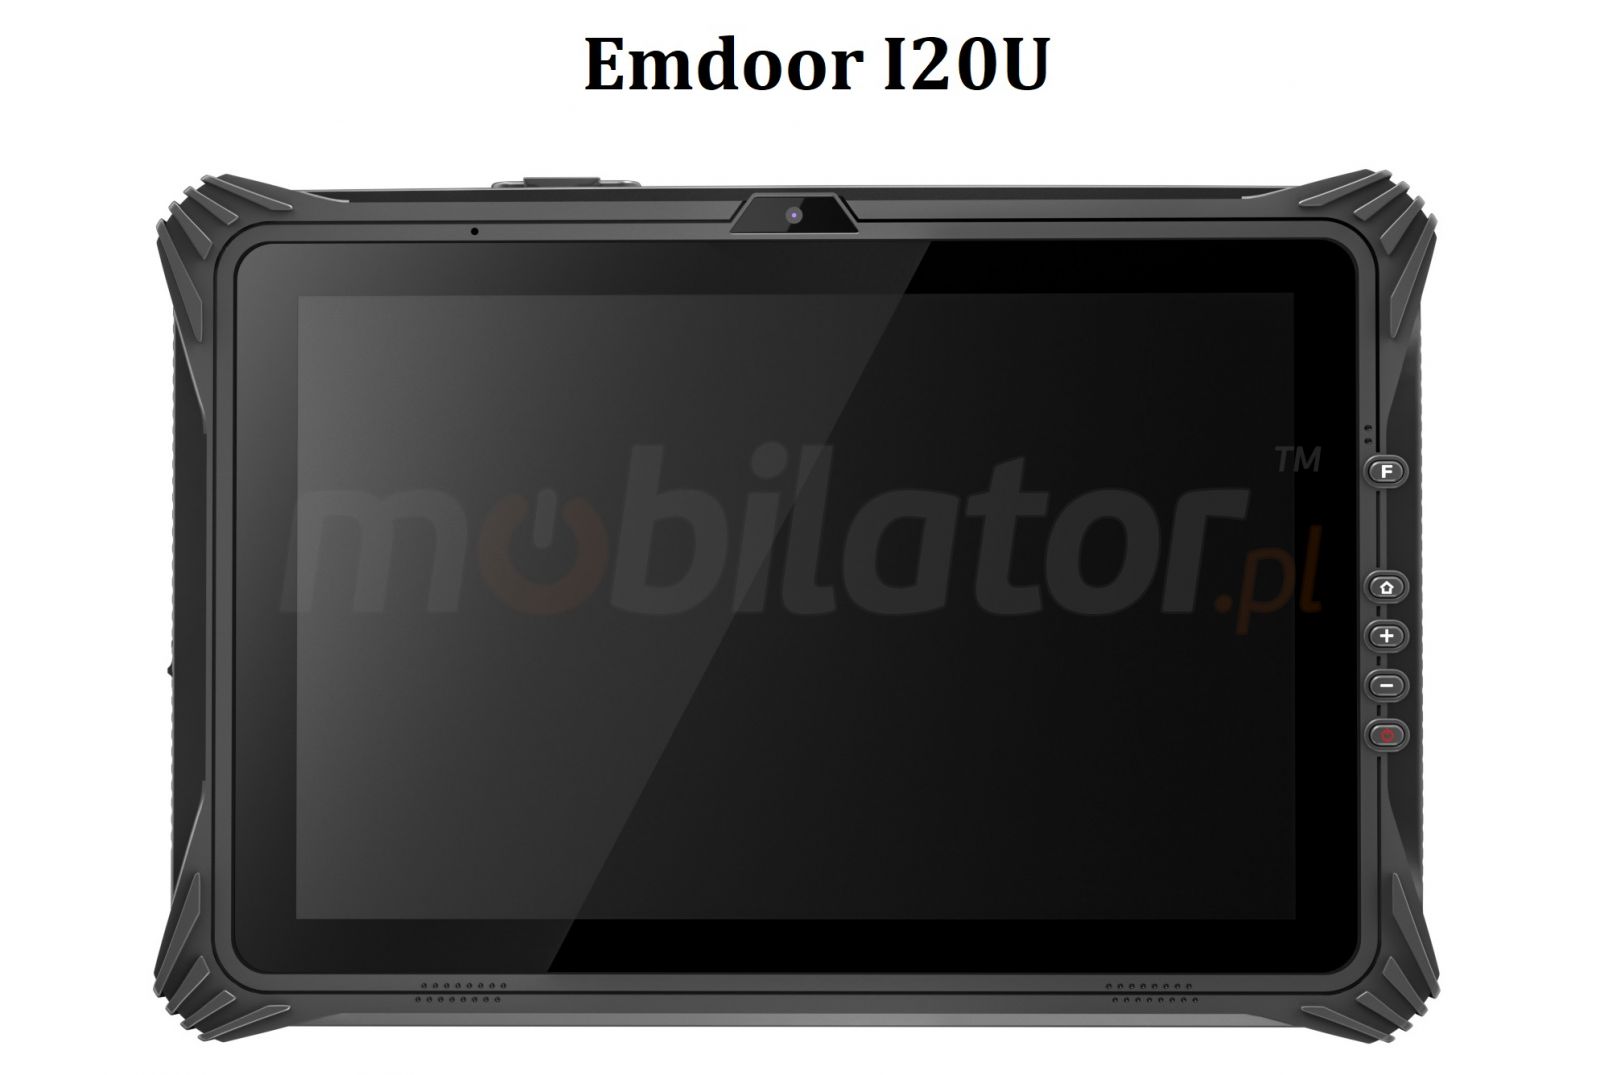 Emdoor I20U v.13 - Odporny na upadki 12.2 calowy tablet z Windows 10 Home, czytnikiem kodw 1D MOTO, NFC, 4G, pamici 8GB RAM i 128GB ROM, Bluetooth 4.2